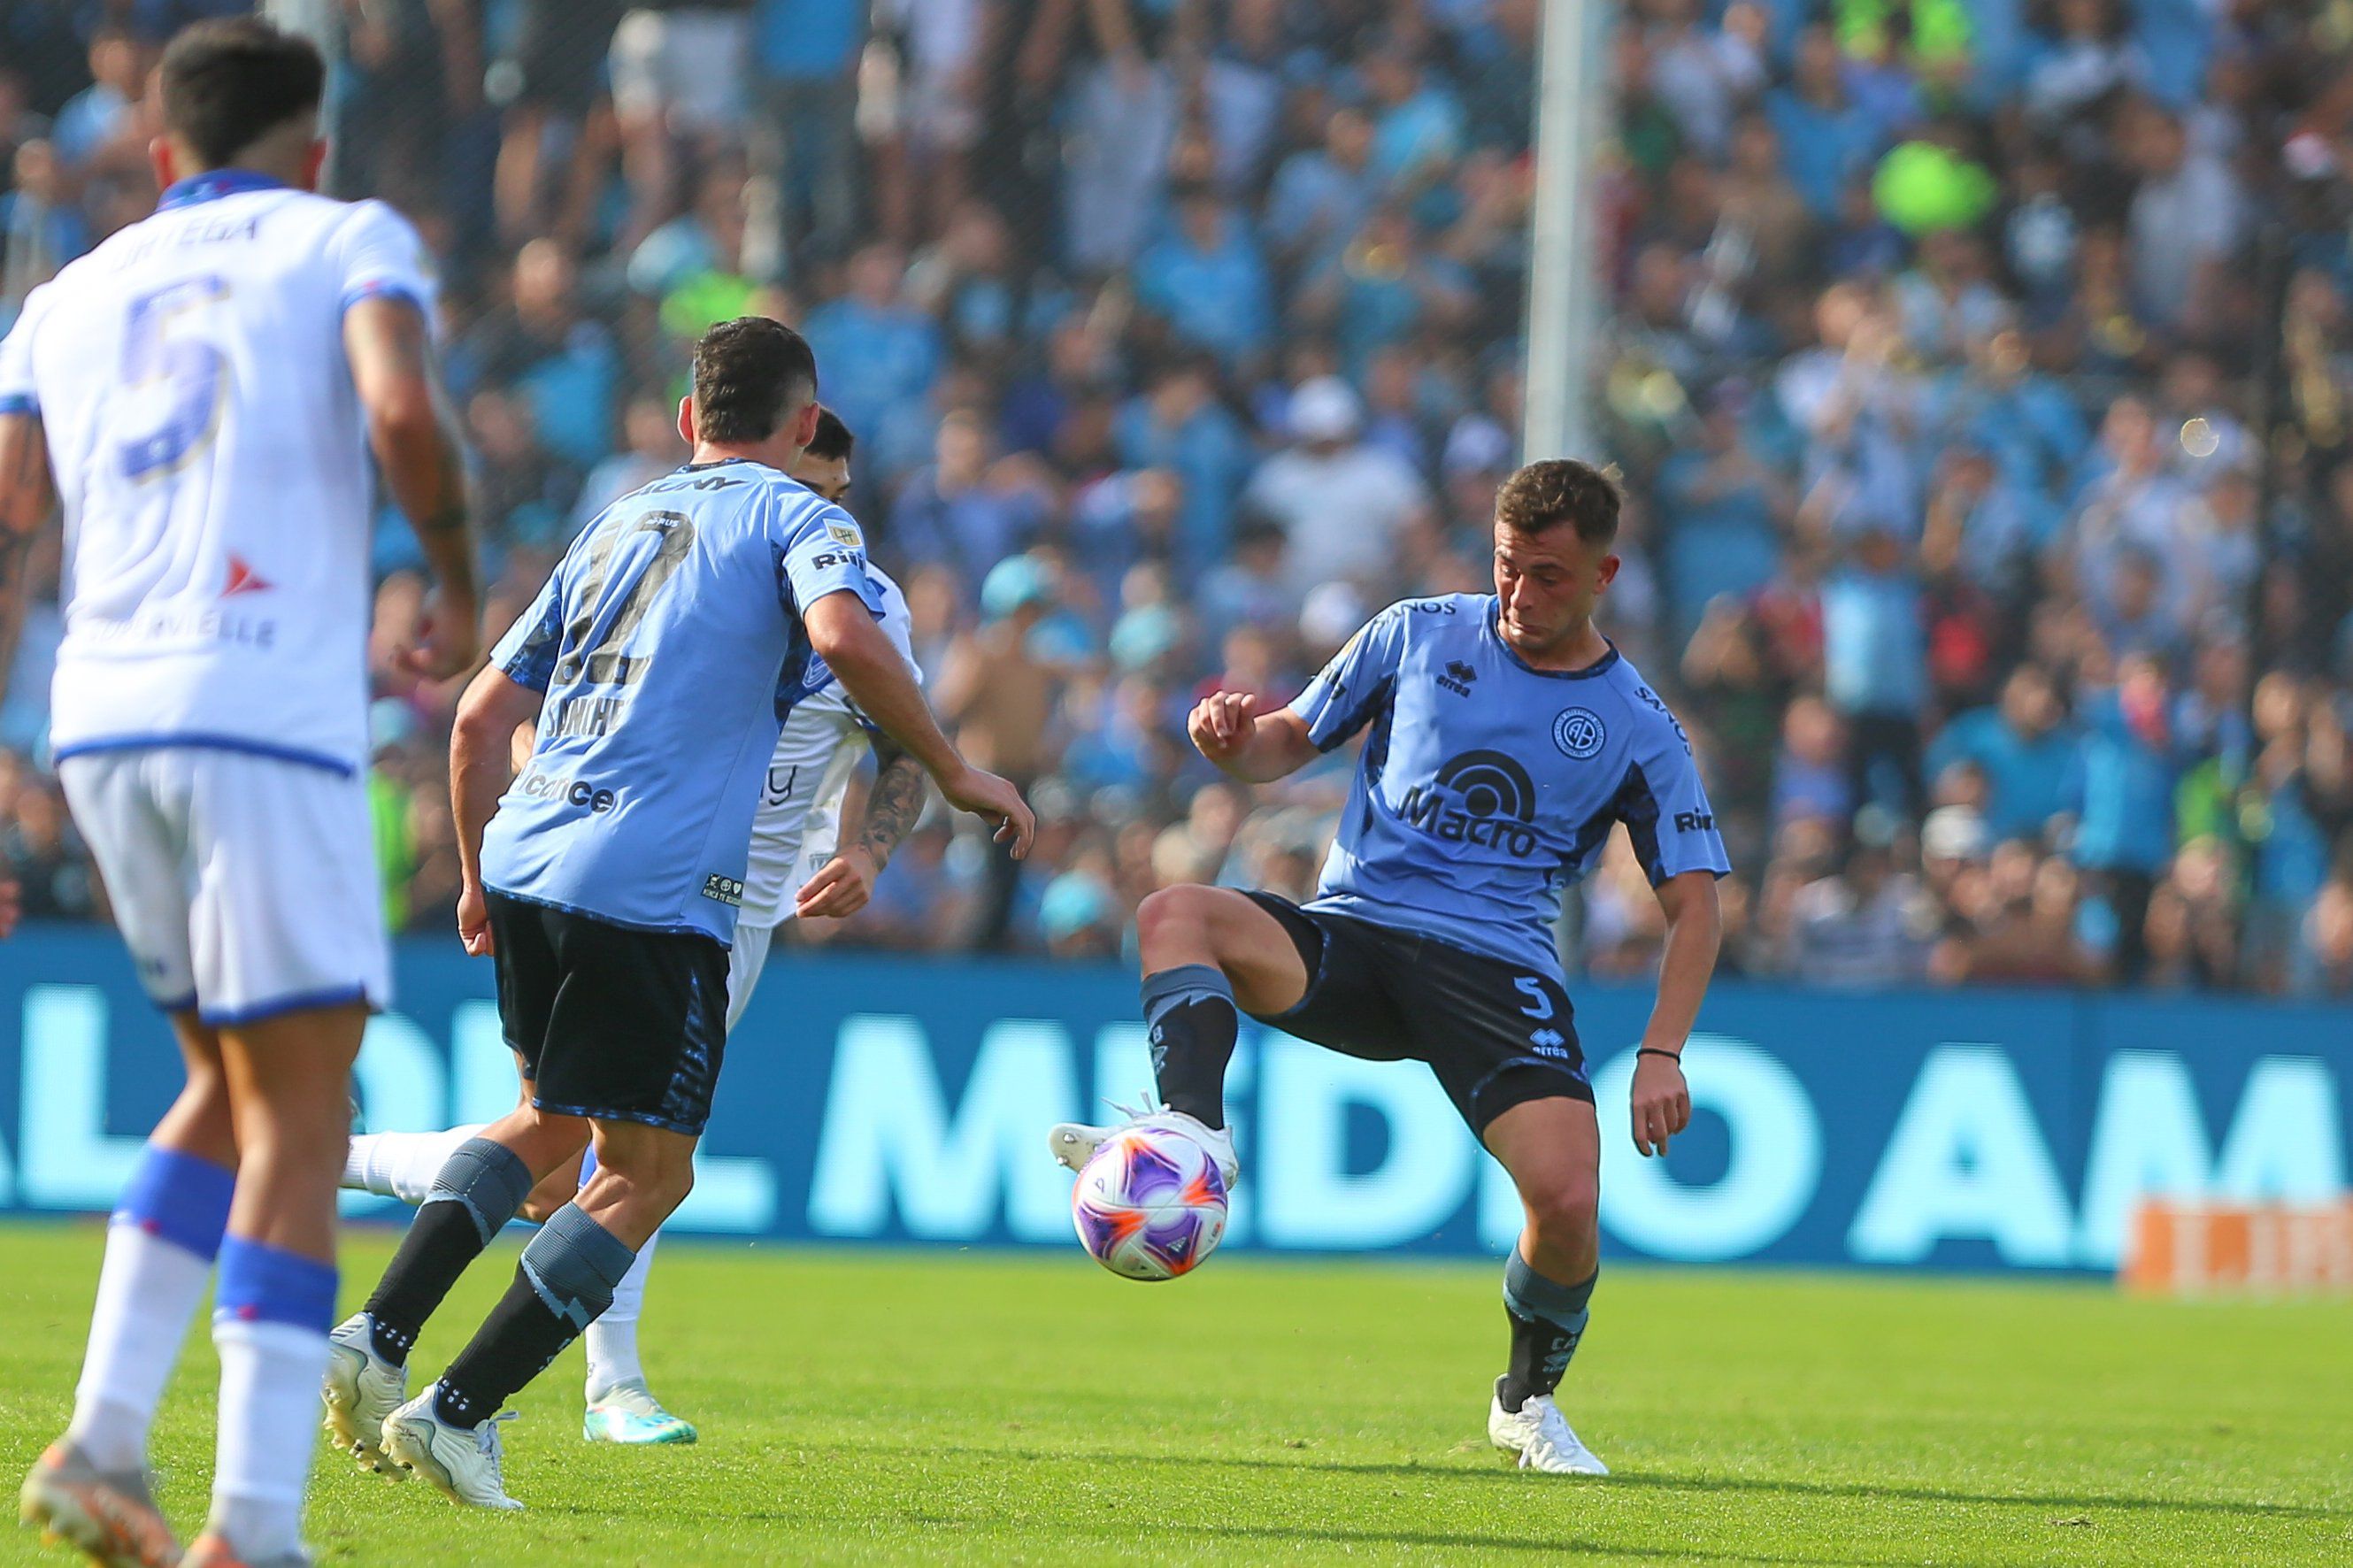 El volante central, Santiago Longo, terminó con un golpe en el hombro (Prensa Belgrano)